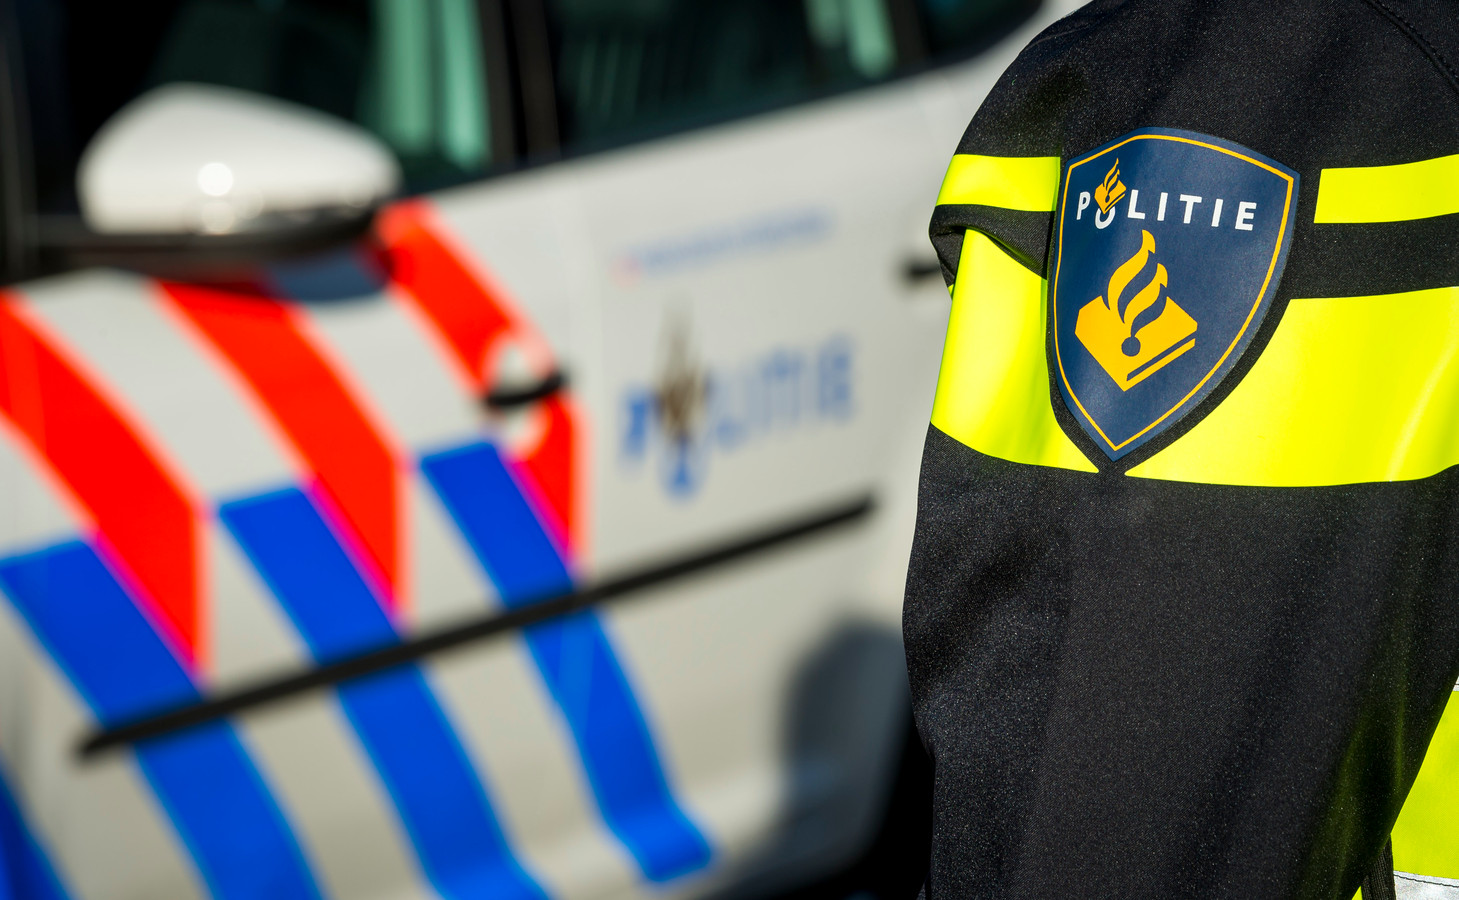 Politiemensen uit Schoonhoven en Molenlanden werkten samen om de man aan te houden. Foto ter illustratie.